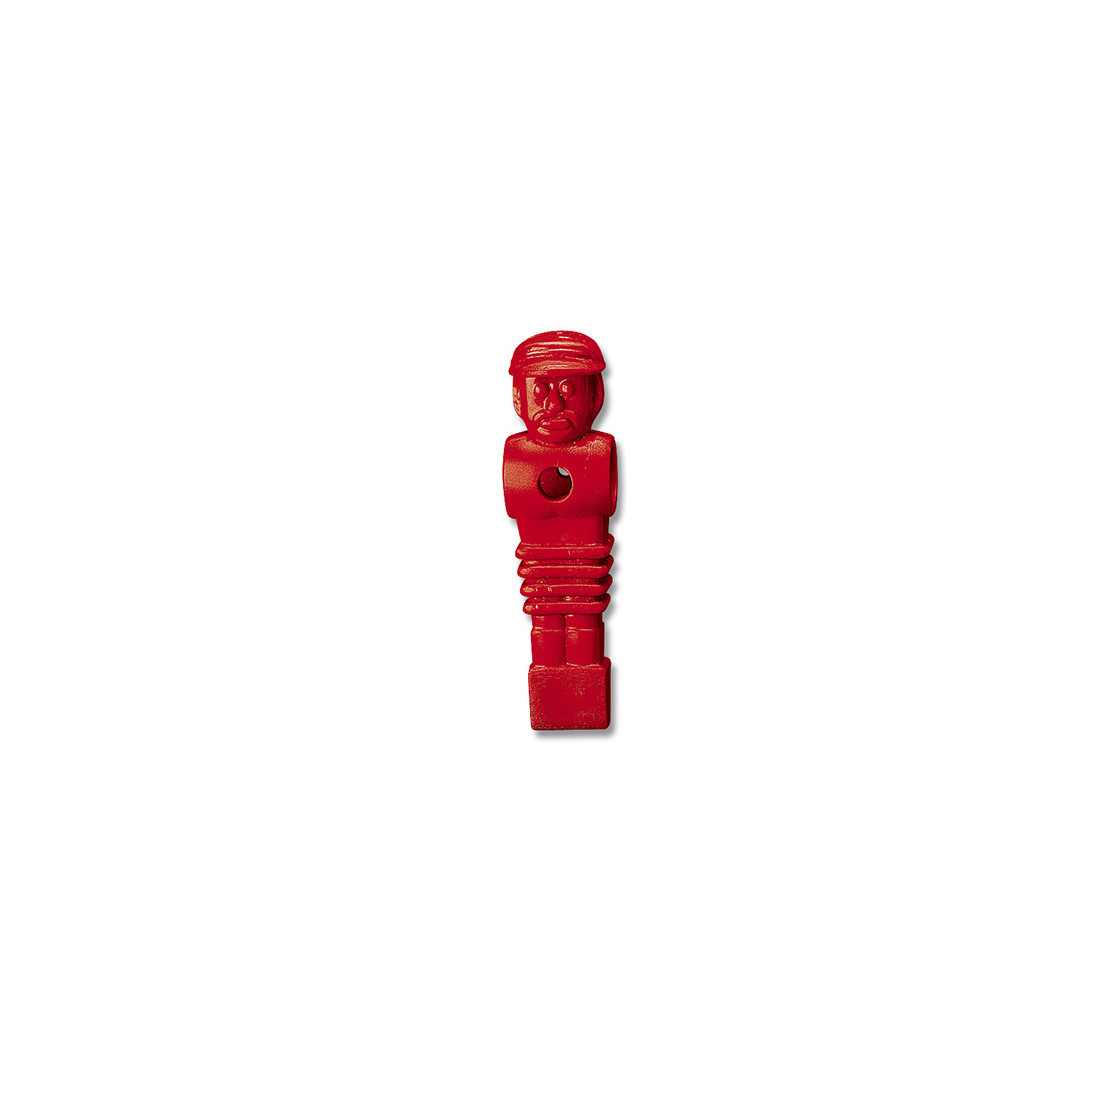 Kicker-Figur fürLöwen-Kicker rot 